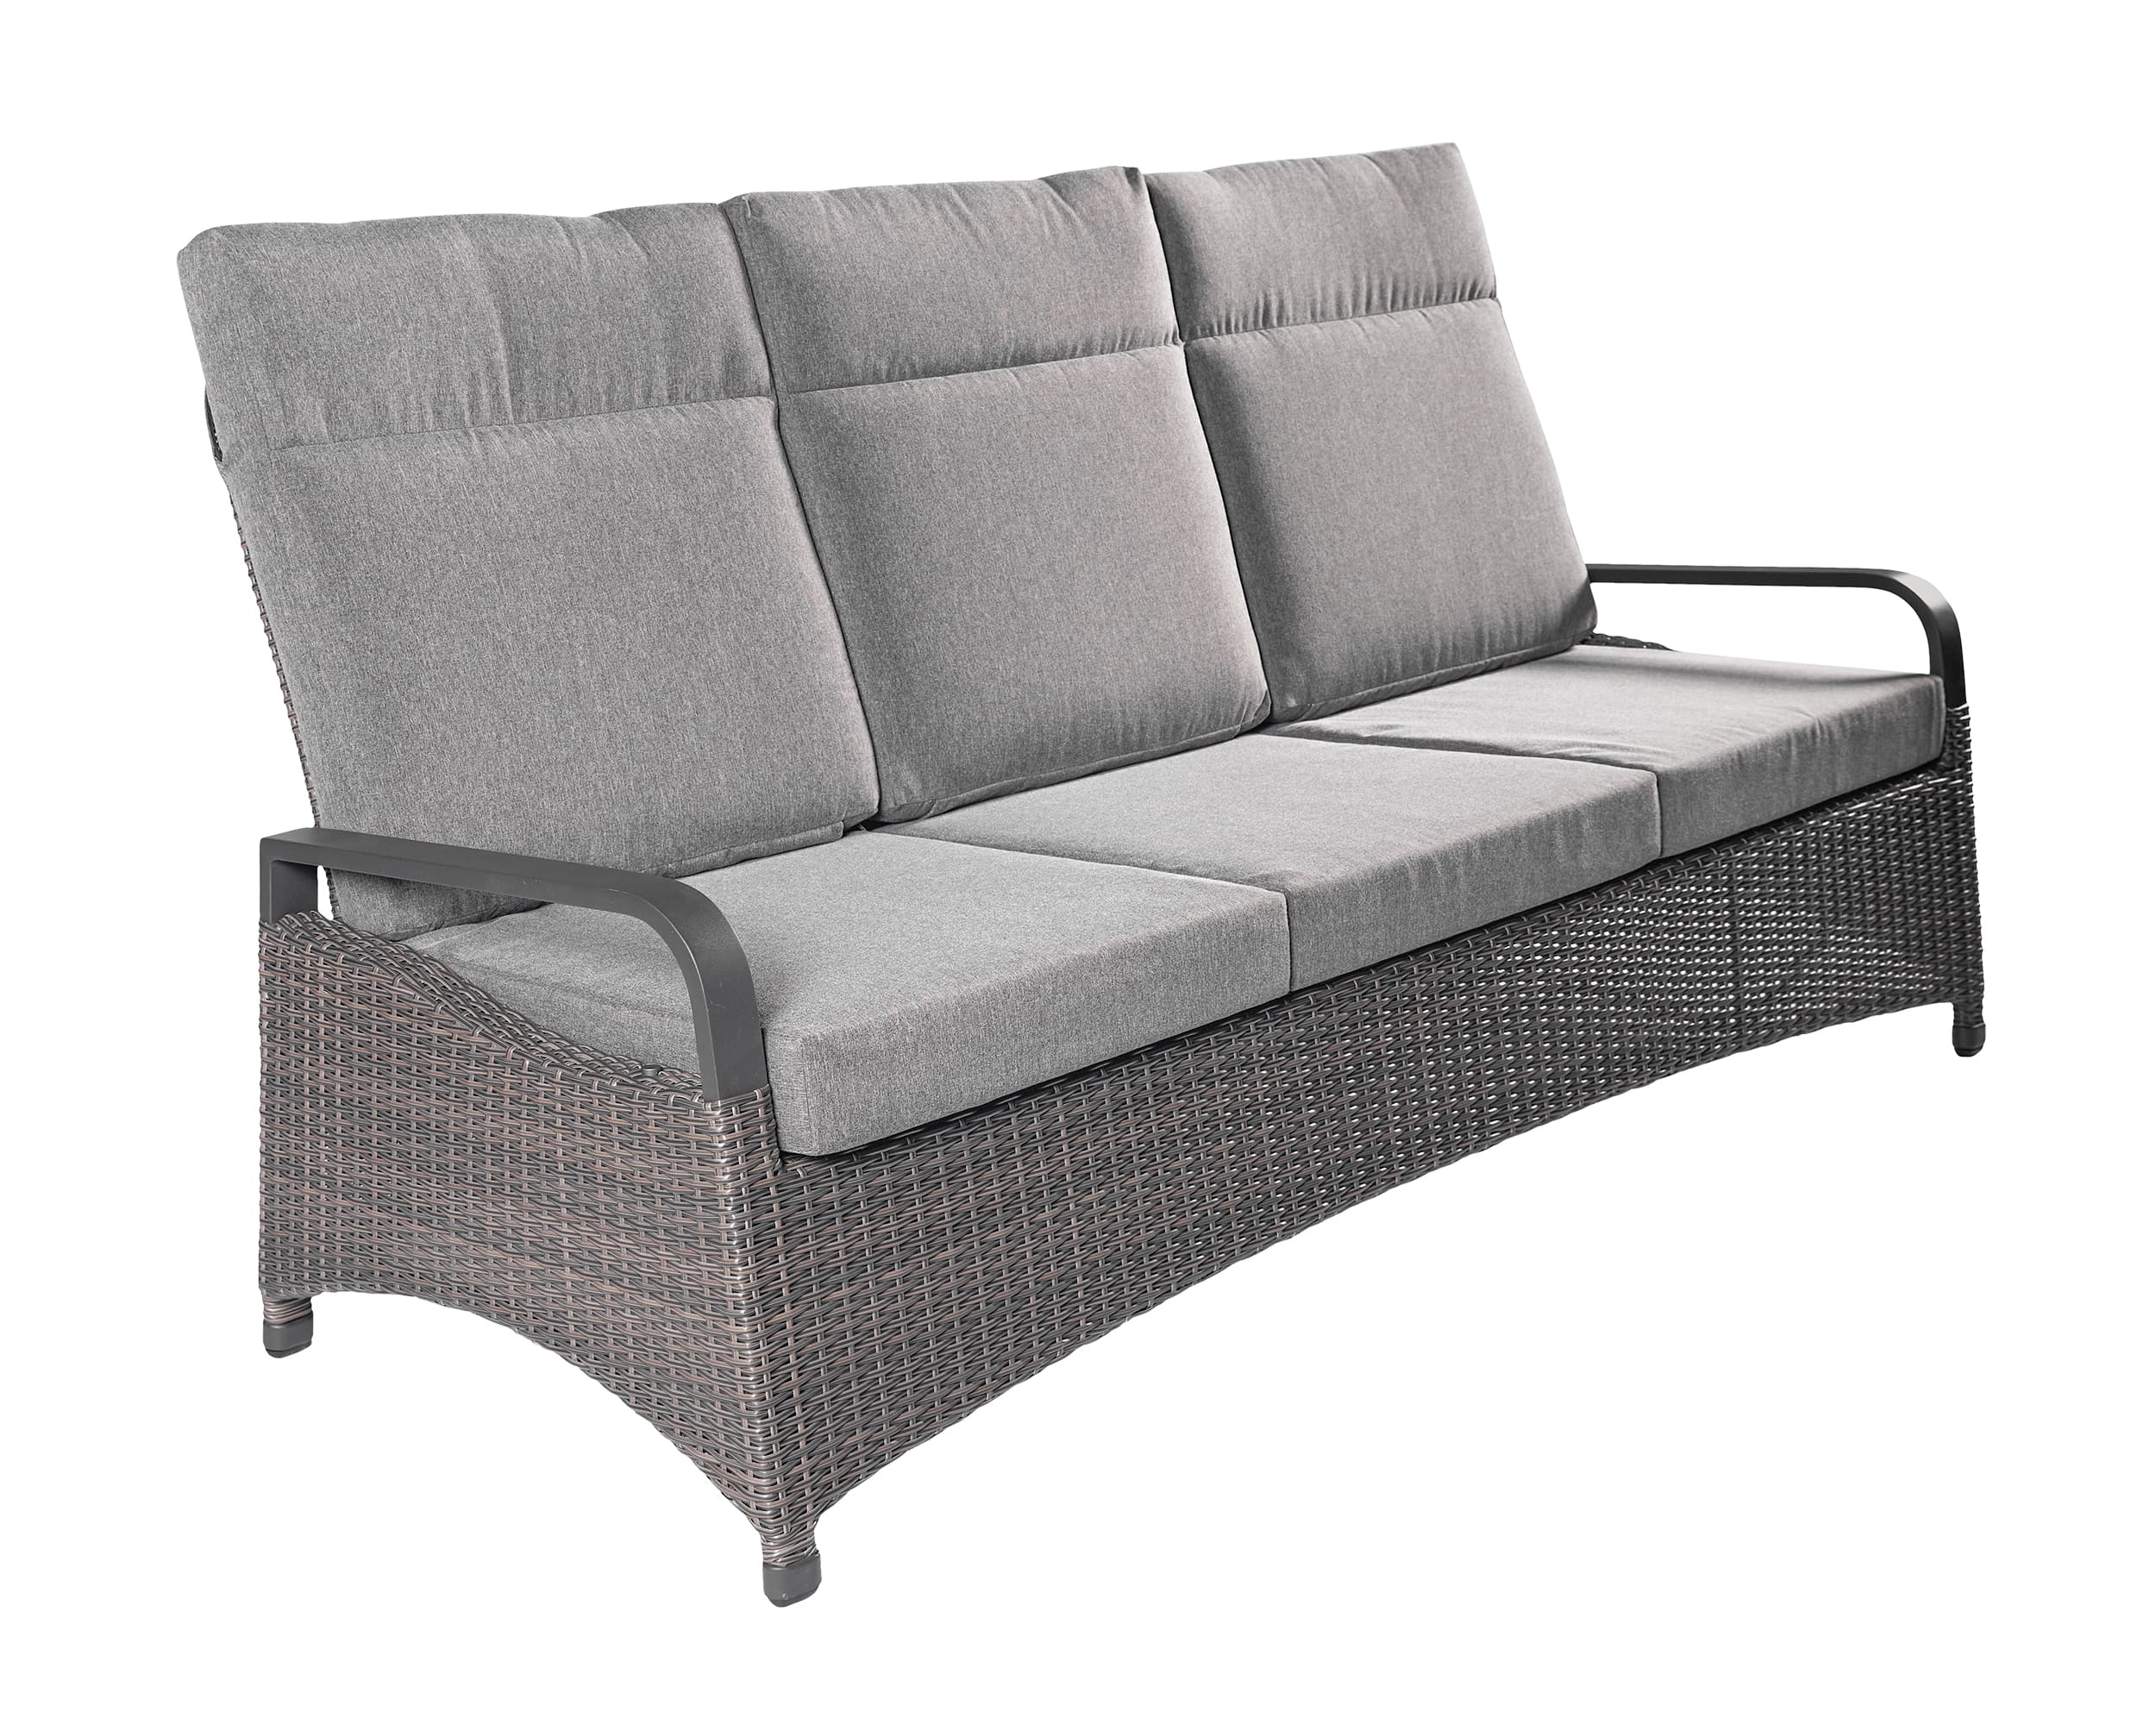 LC Garden »Komido« 3-Sitzer Sofa omega braun 89x205x105cm Dreisitzer aus handgeflochtenem Polyrattan inkl. Sitzkissen